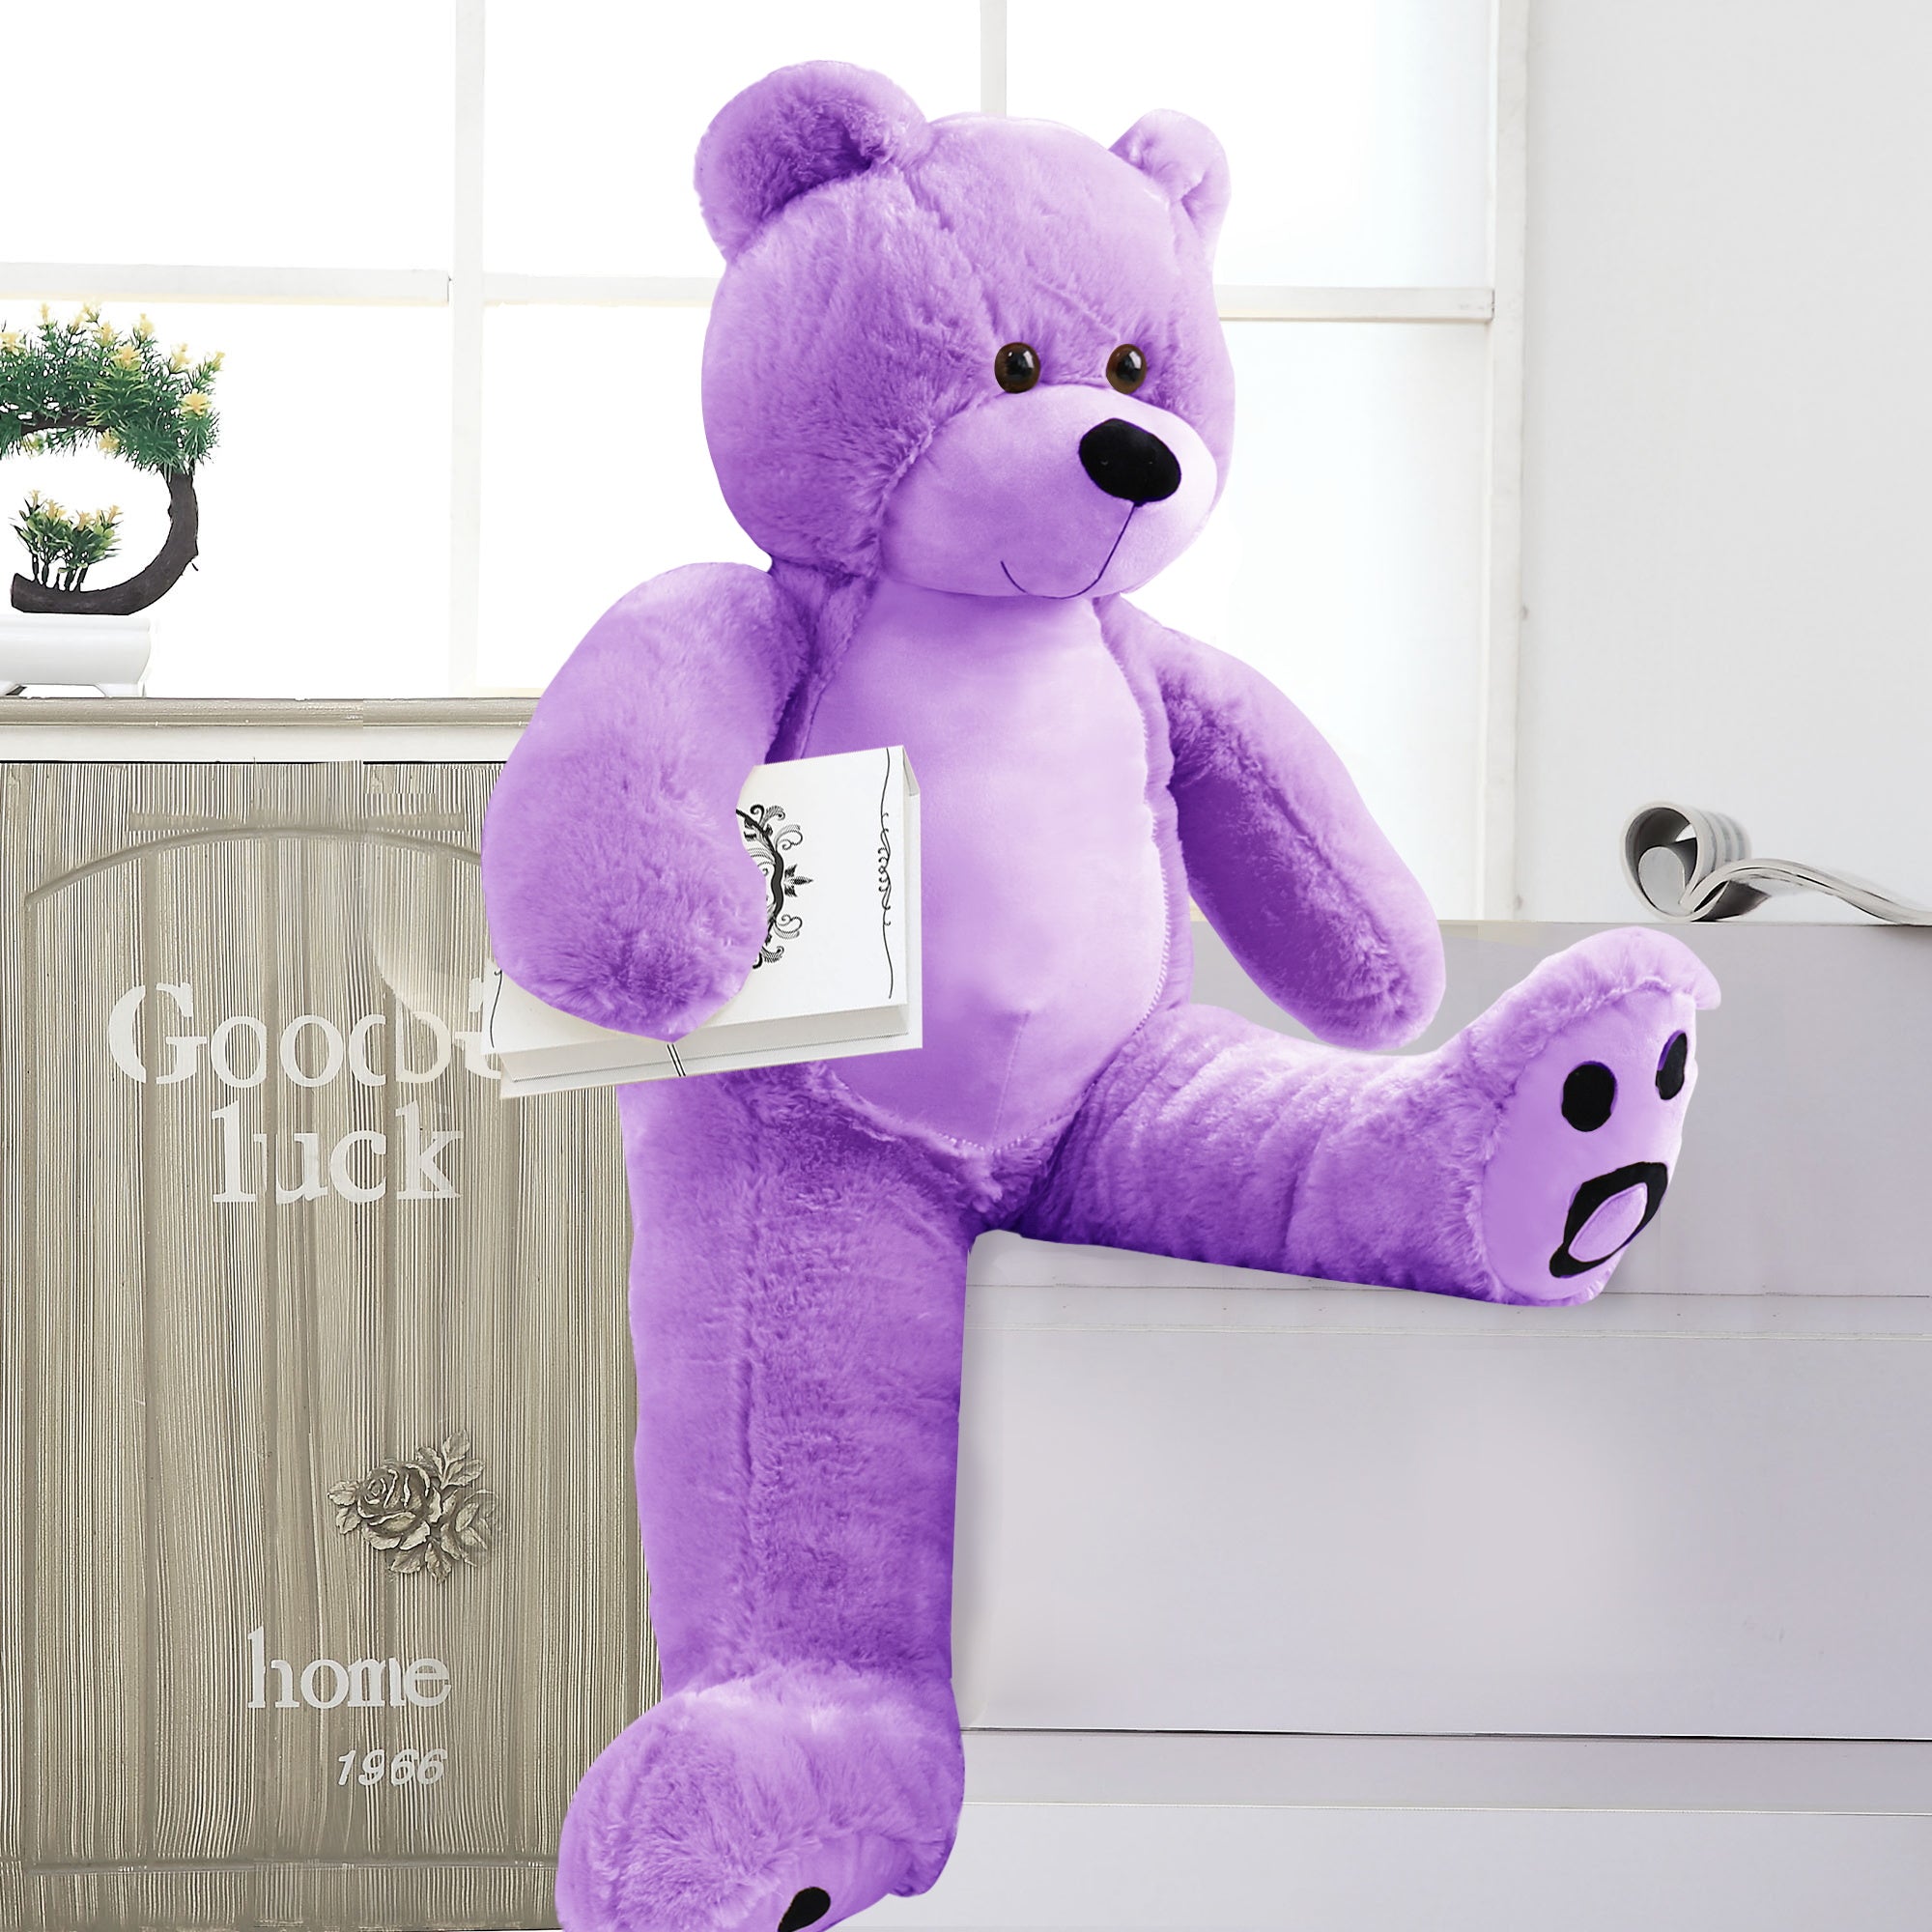 3 Foot Giant Teddy Bear Daneey Cuddly 36 Inches